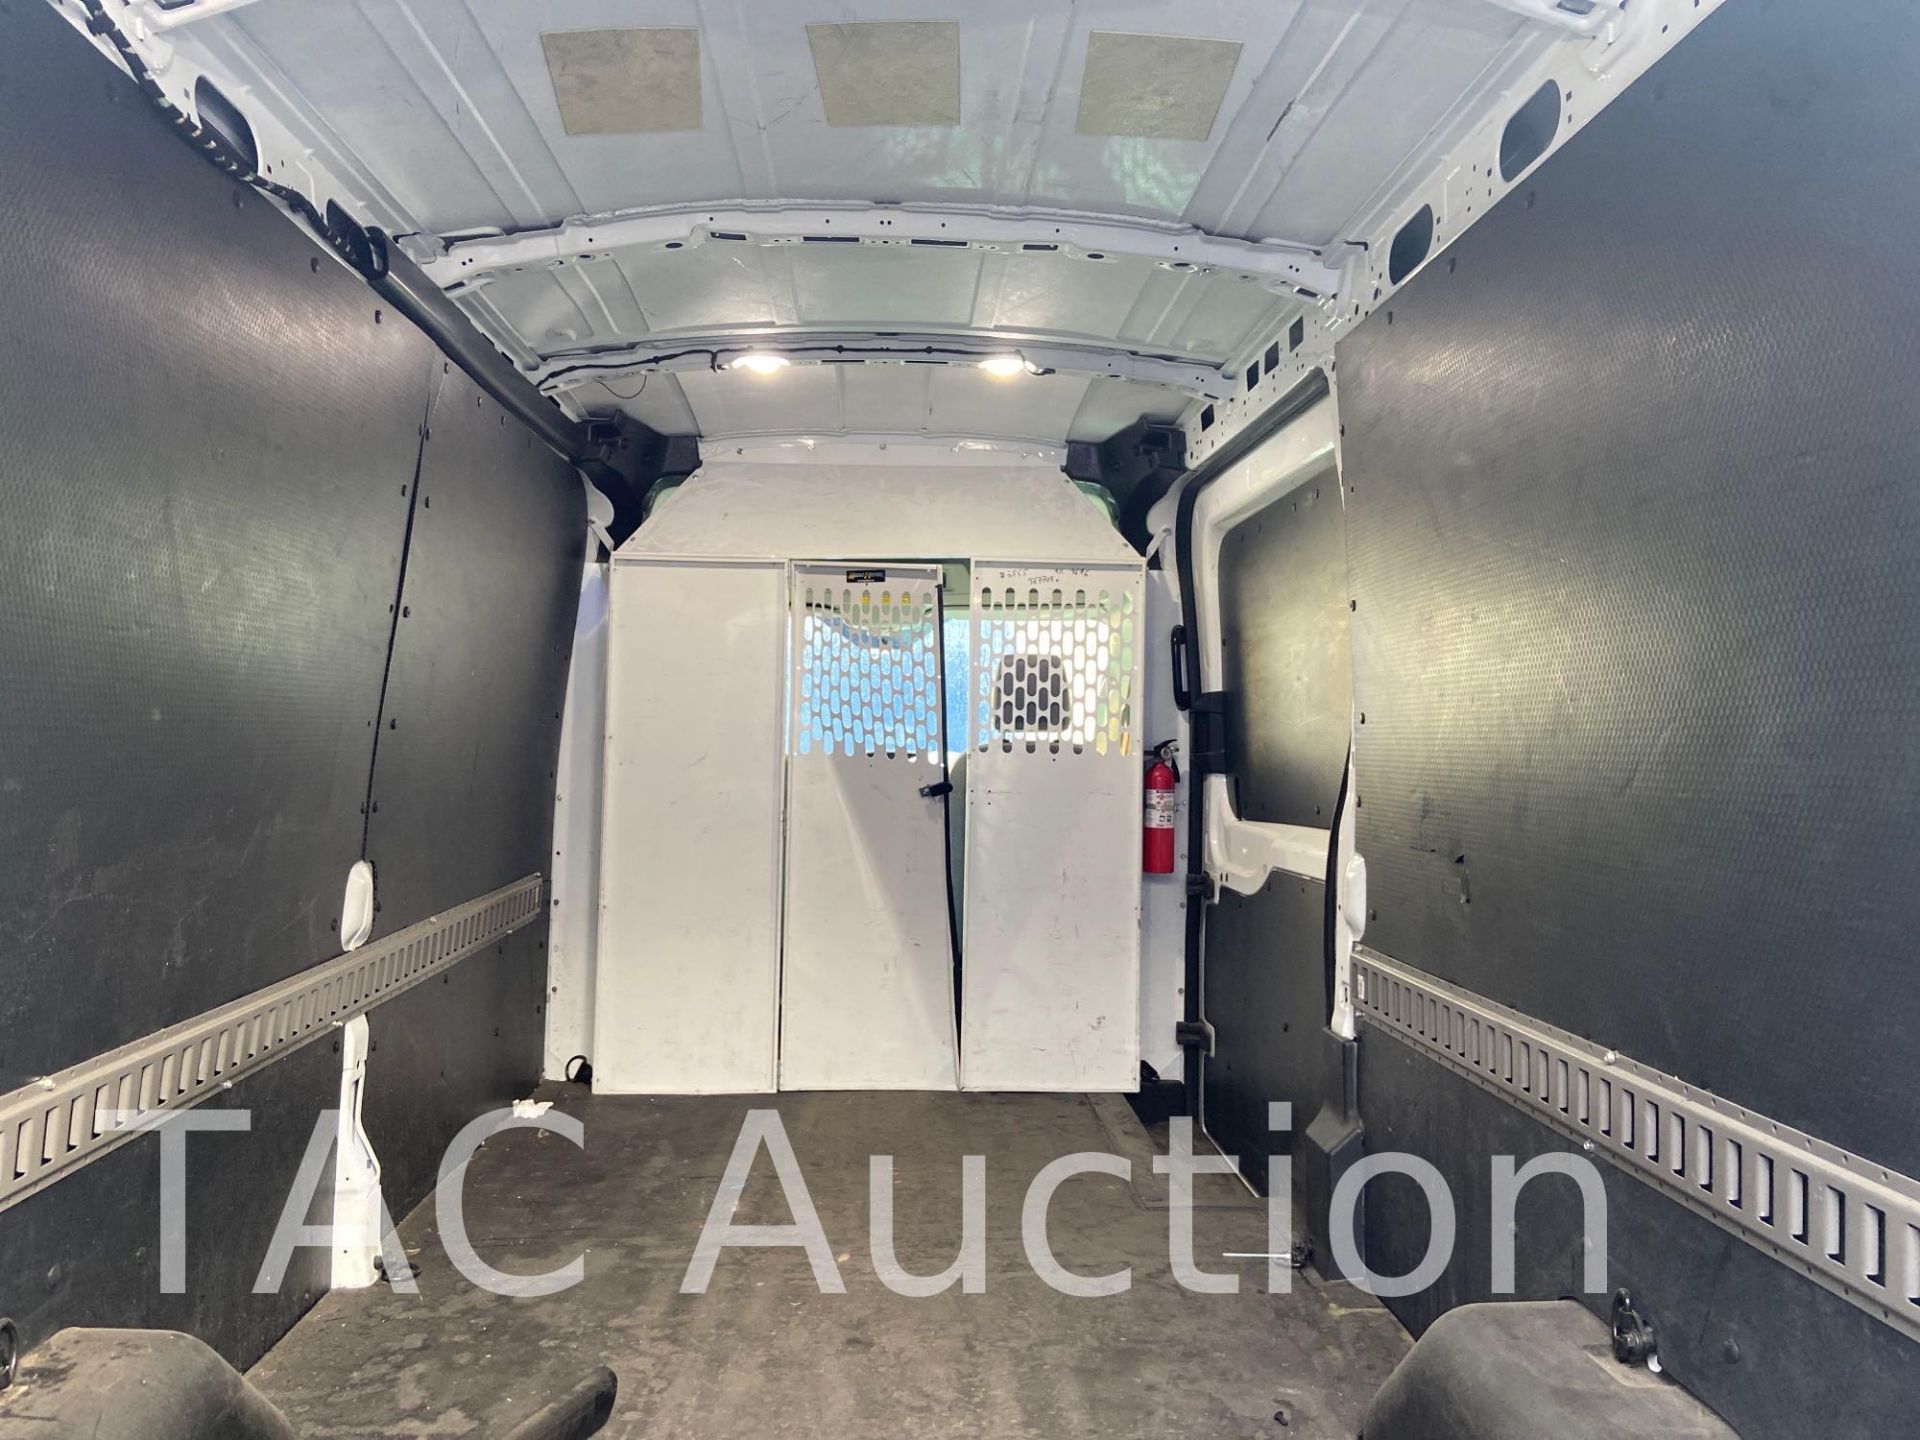 2019 Ford Transit 150 Cargo Van - Image 48 of 66